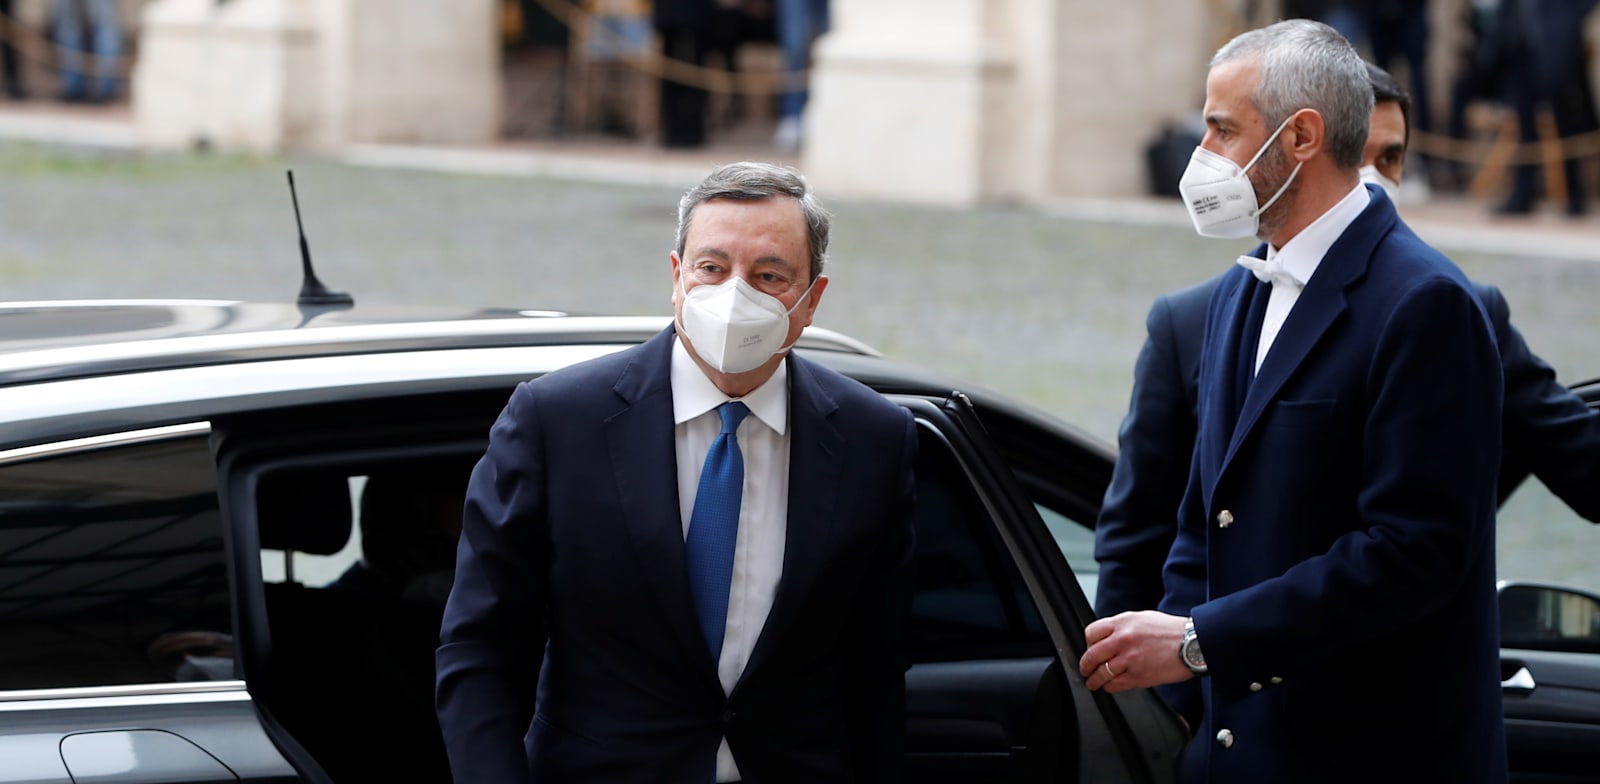 מאריו דראגי (משמאל), ראש ממשלה איטליה המיועד, מגיע לפגישה עם סרג'יו מאטארלה הנשיא / צילום: Reuters, Yara Nardi